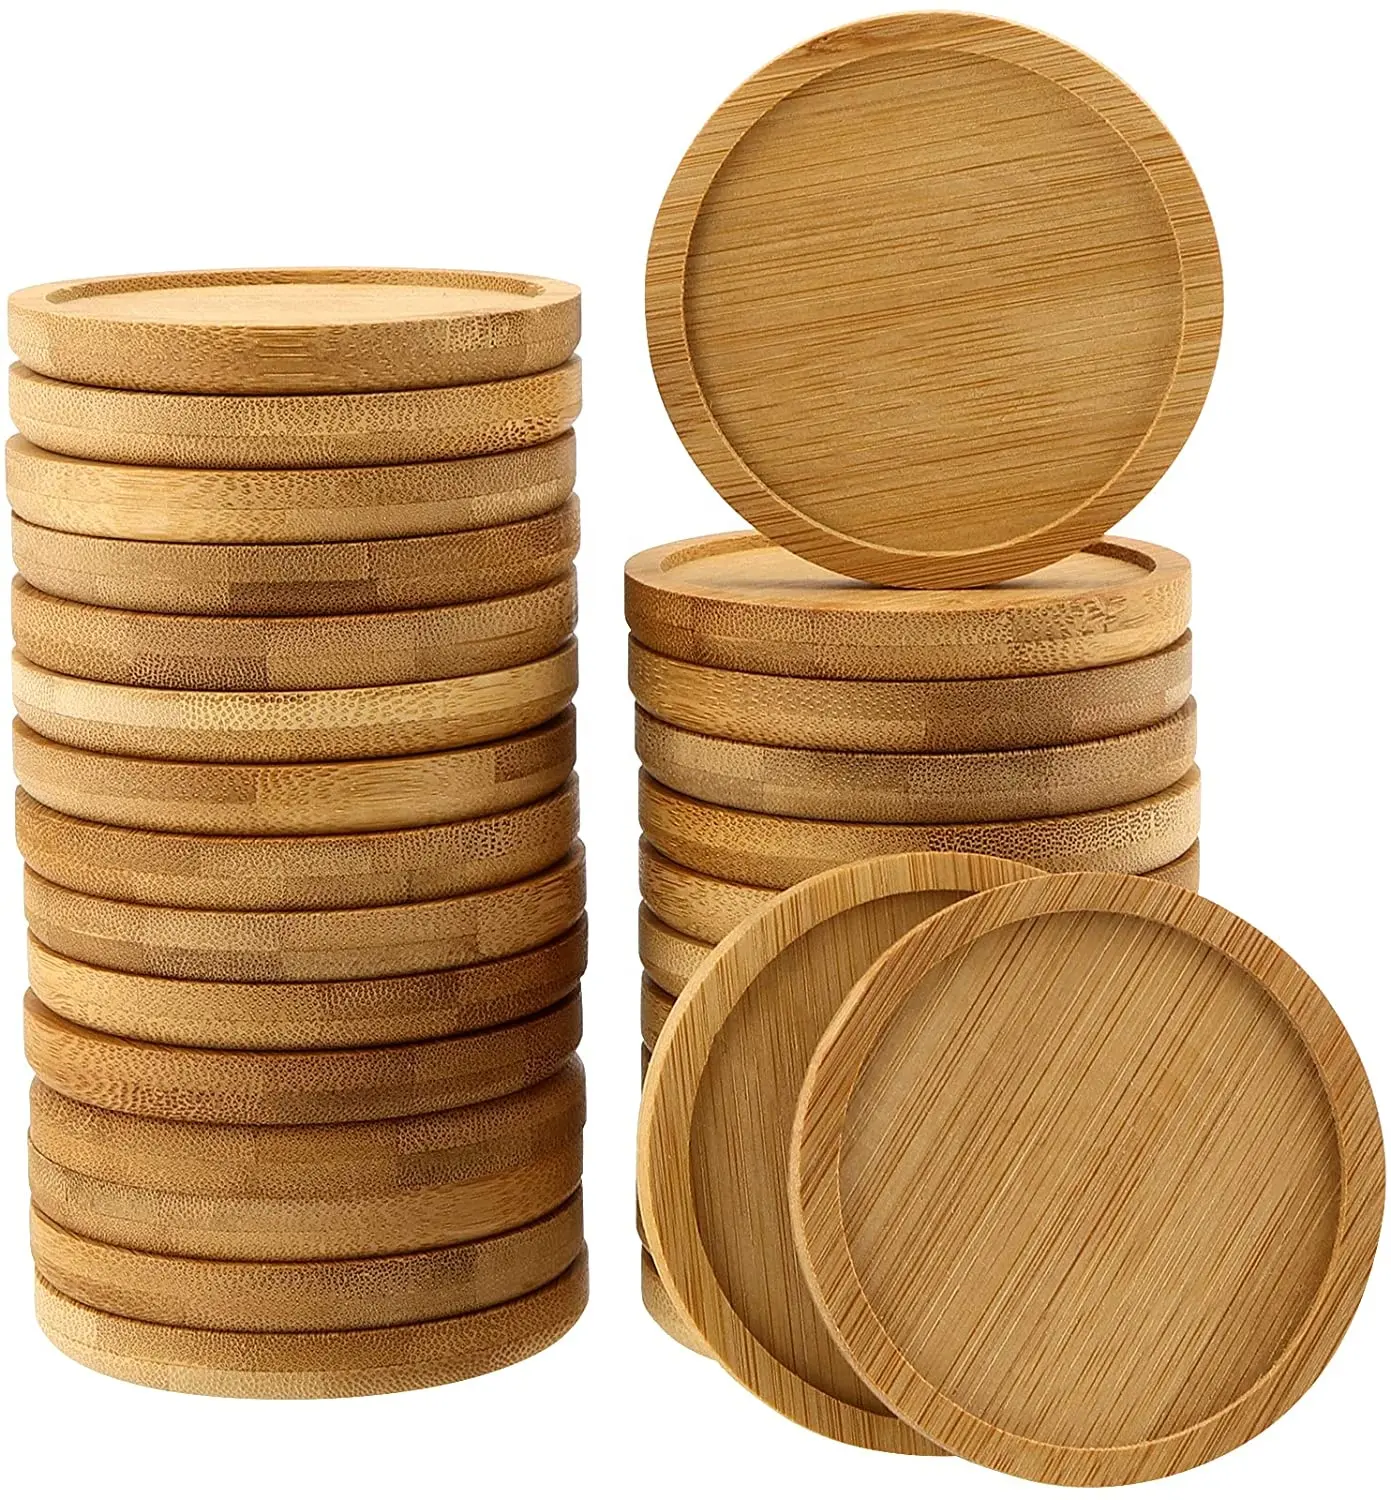 Molde de forma redonda para decoração, de alta qualidade, vazio, natural, madeira de bambu